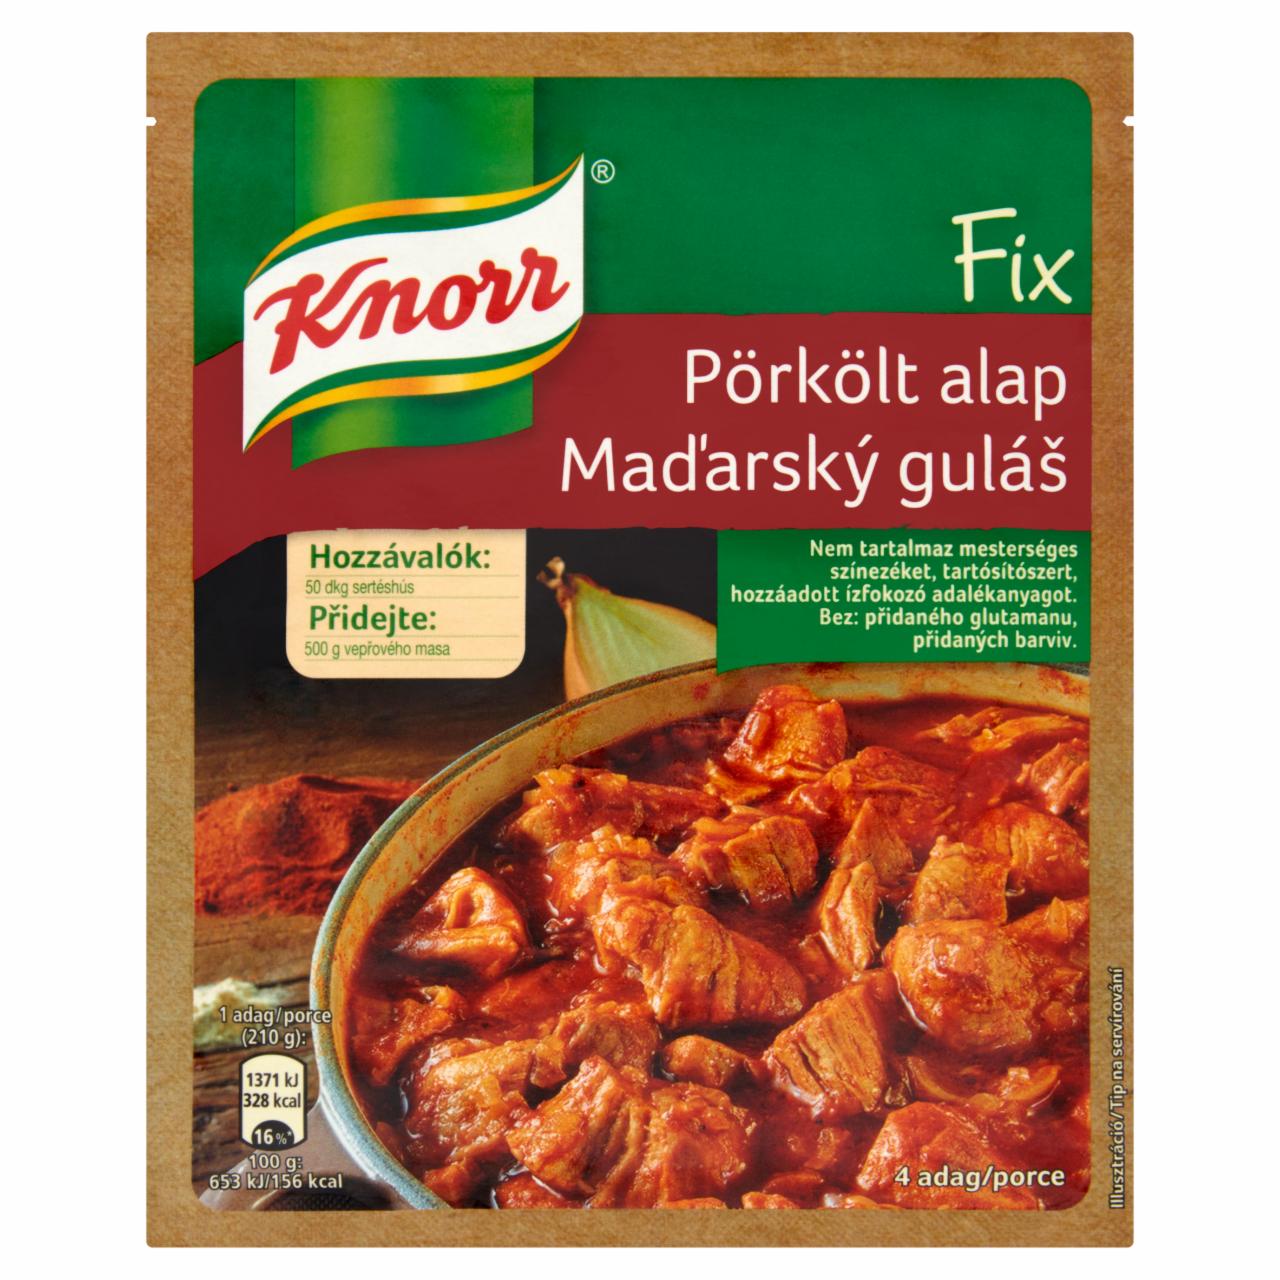 Képek - Knorr Fix pörkölt alap 45 g